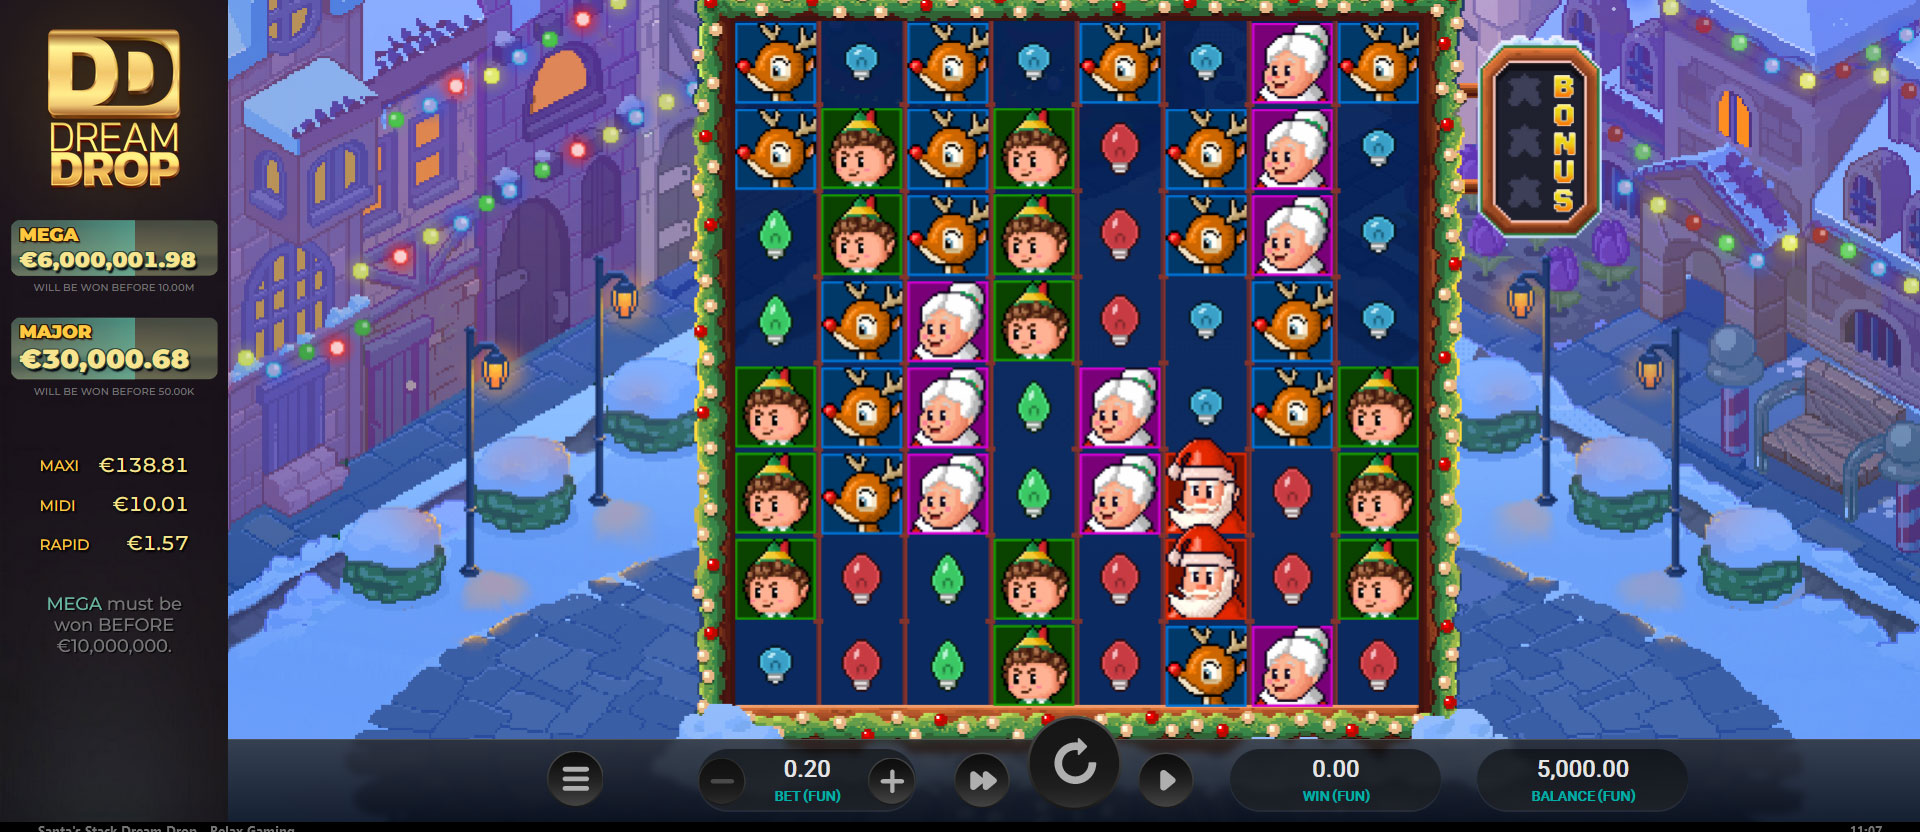 schermo del gioco slot online santa's stack dream drop